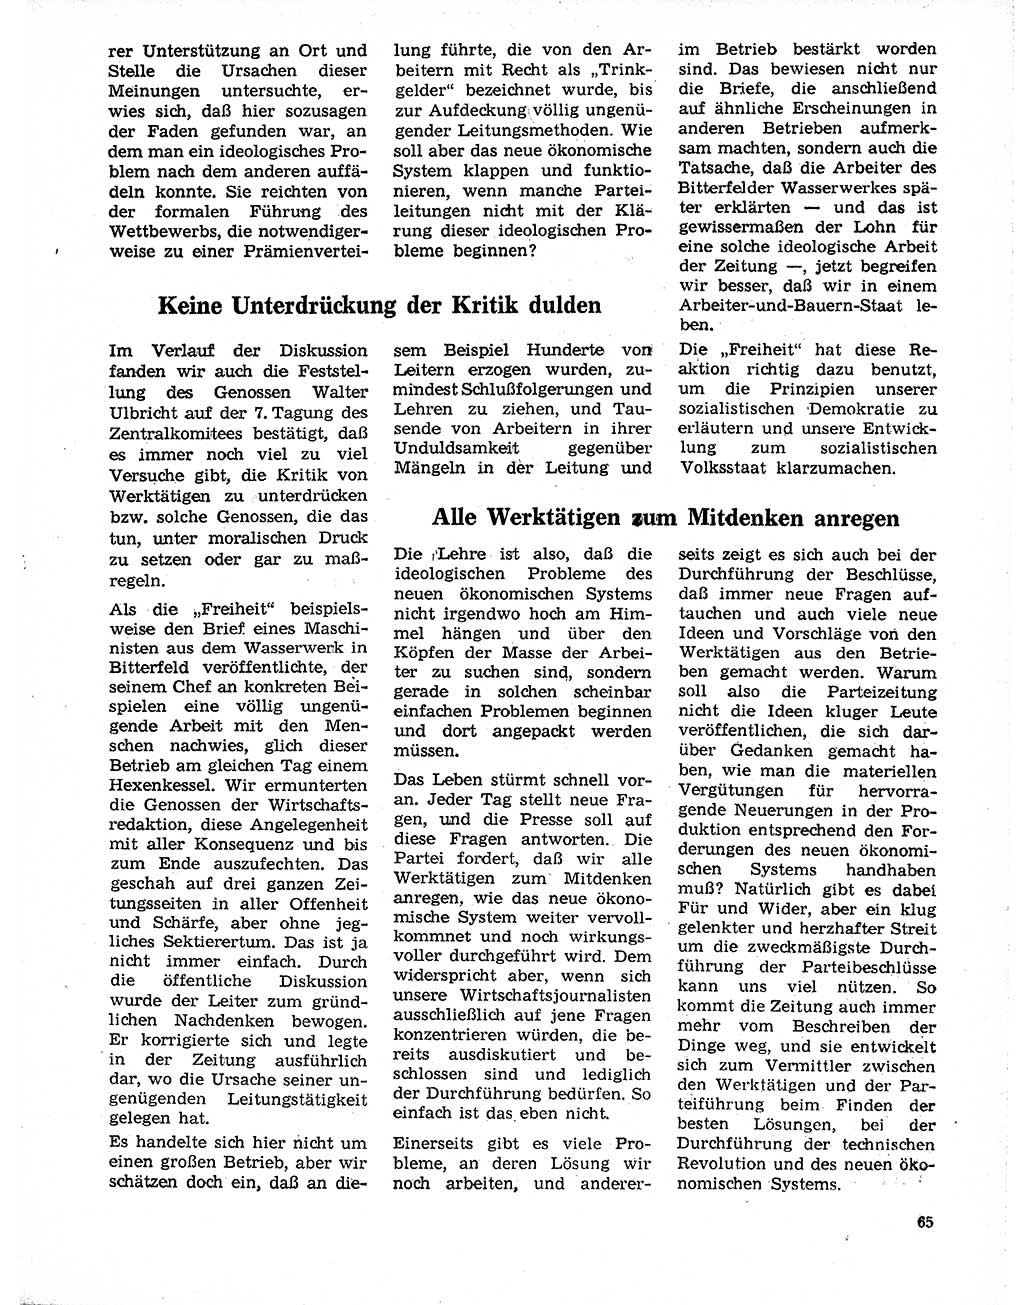 Neuer Weg (NW), Organ des Zentralkomitees (ZK) der SED (Sozialistische Einheitspartei Deutschlands) für Fragen des Parteilebens, 20. Jahrgang [Deutsche Demokratische Republik (DDR)] 1965, Seite 65 (NW ZK SED DDR 1965, S. 65)